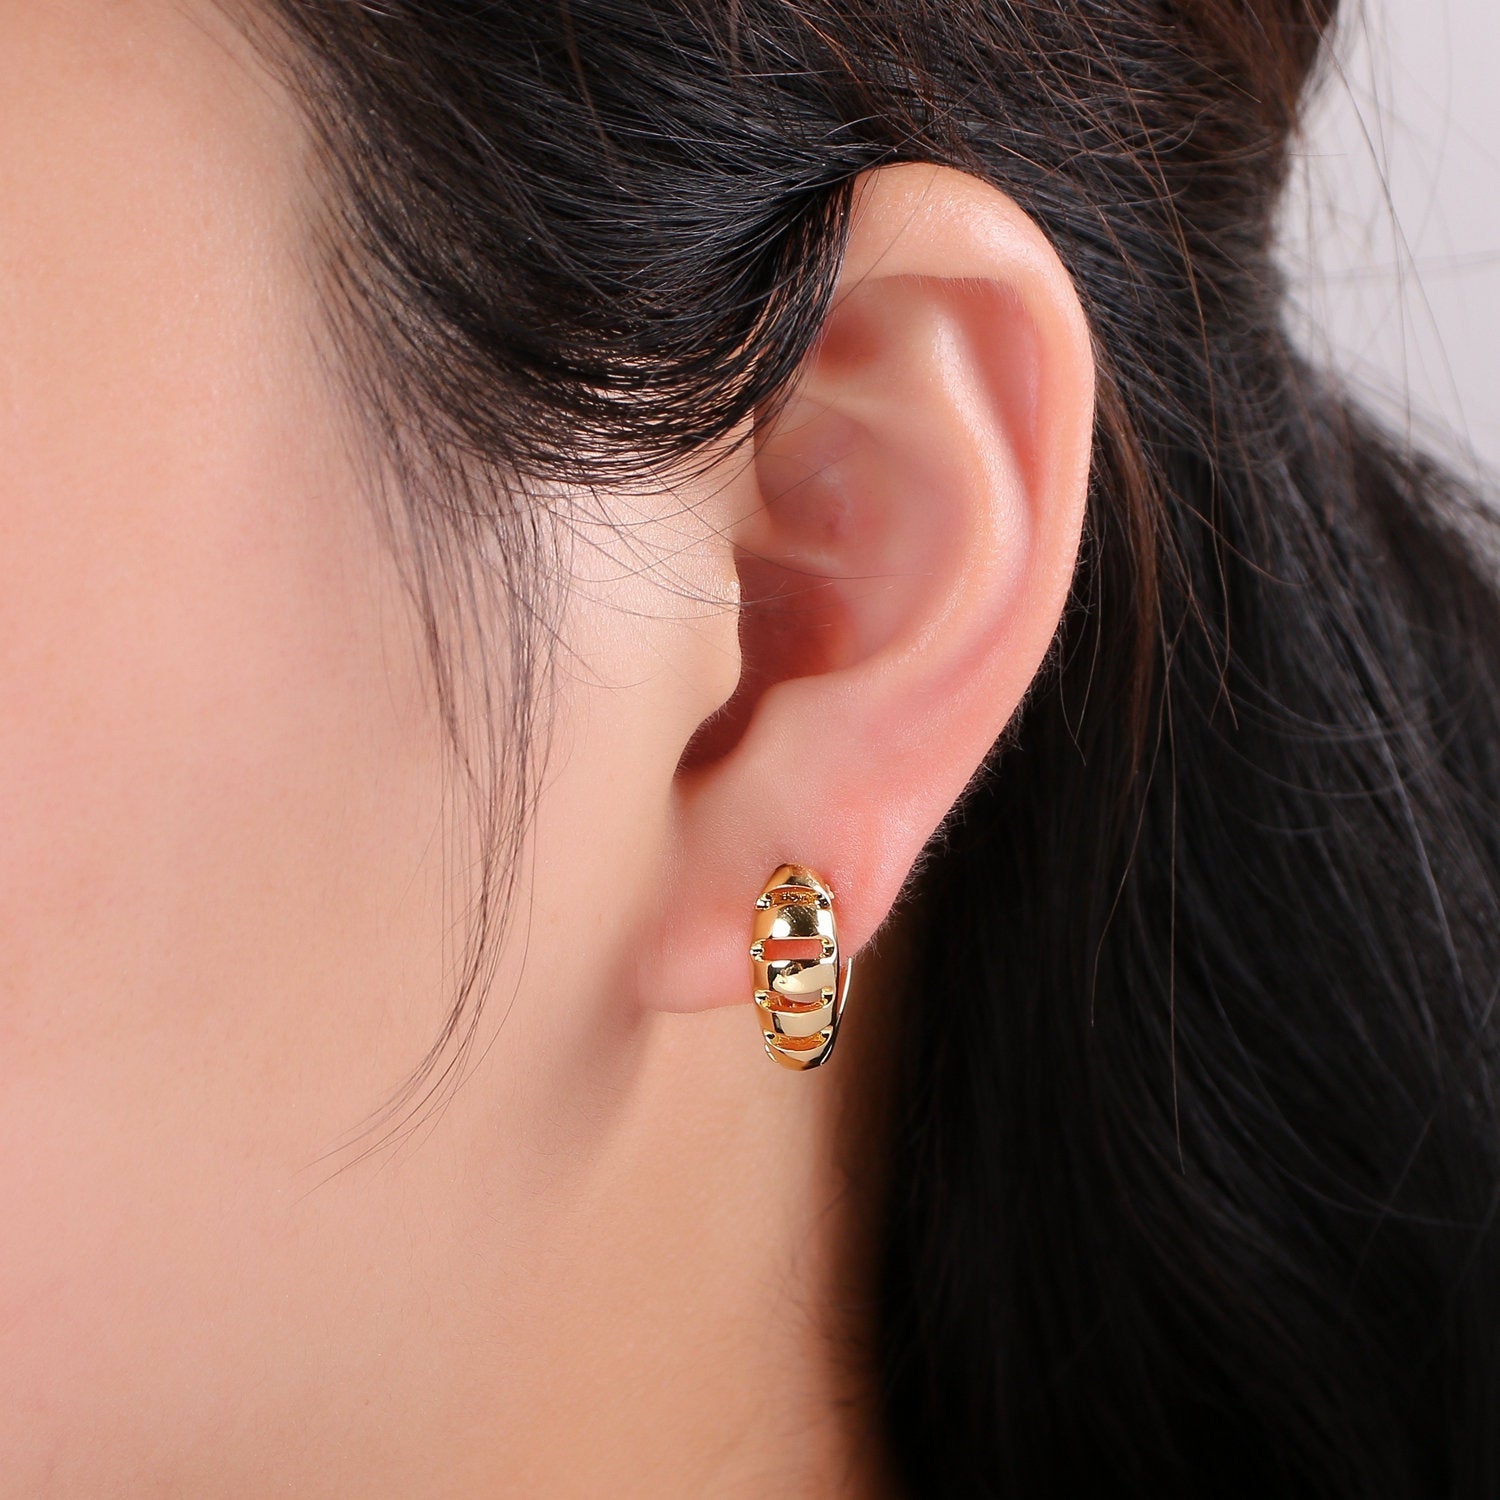 15mm Huggie Hoop Earring, Gold Large hoop earring, Chunky Hoops, Thick Gold Hoops, Medium hoop earrings, Vermeil Earring, gold Hoop Earrings - DLUXCA